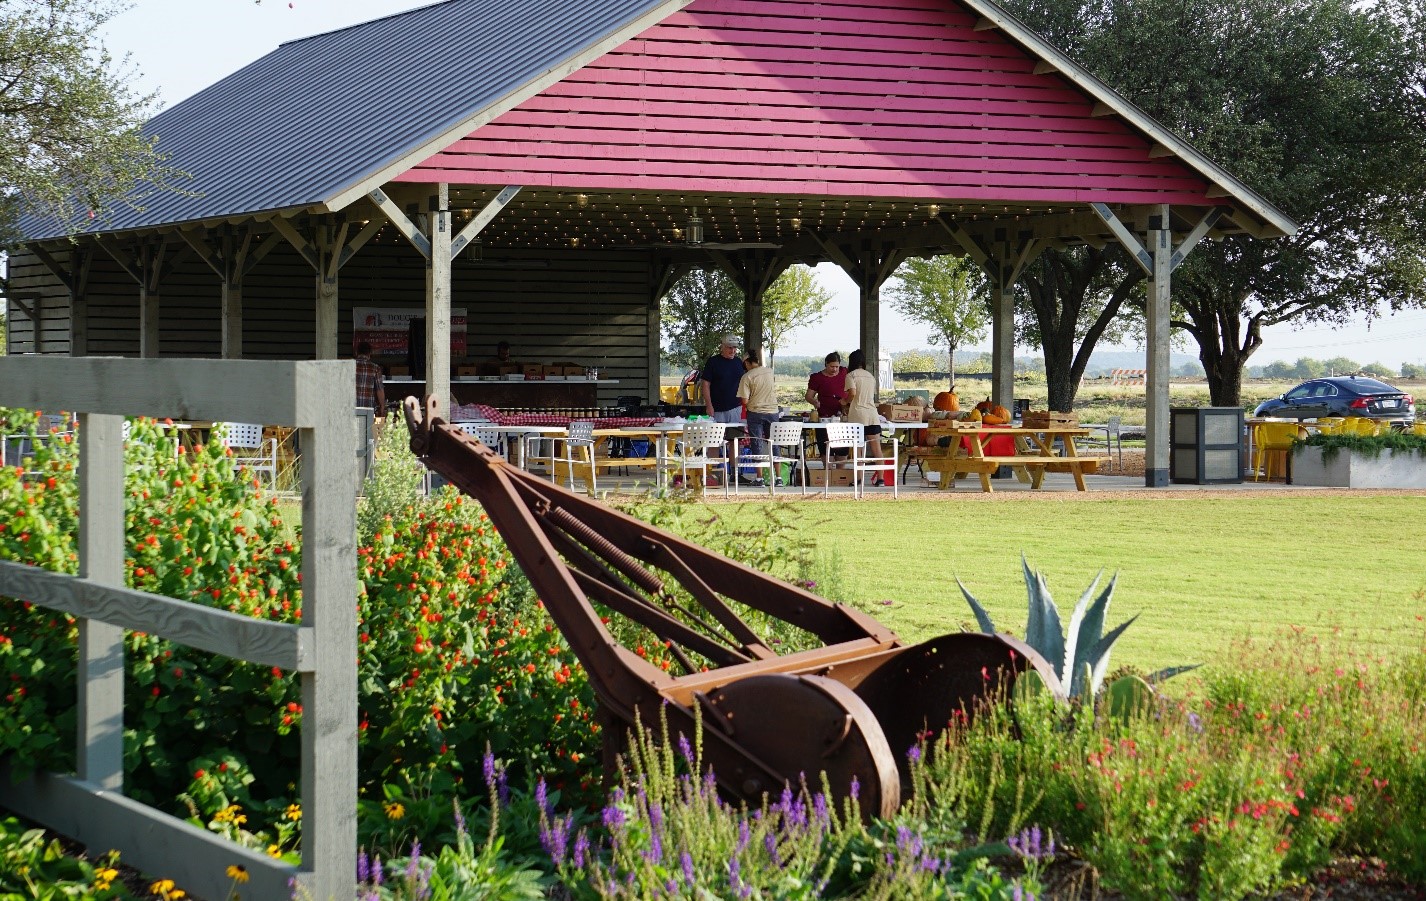 The Barn at Harvest được sử dụng cho các cuộc tụ họp và các sự kiện được tổ chức khác